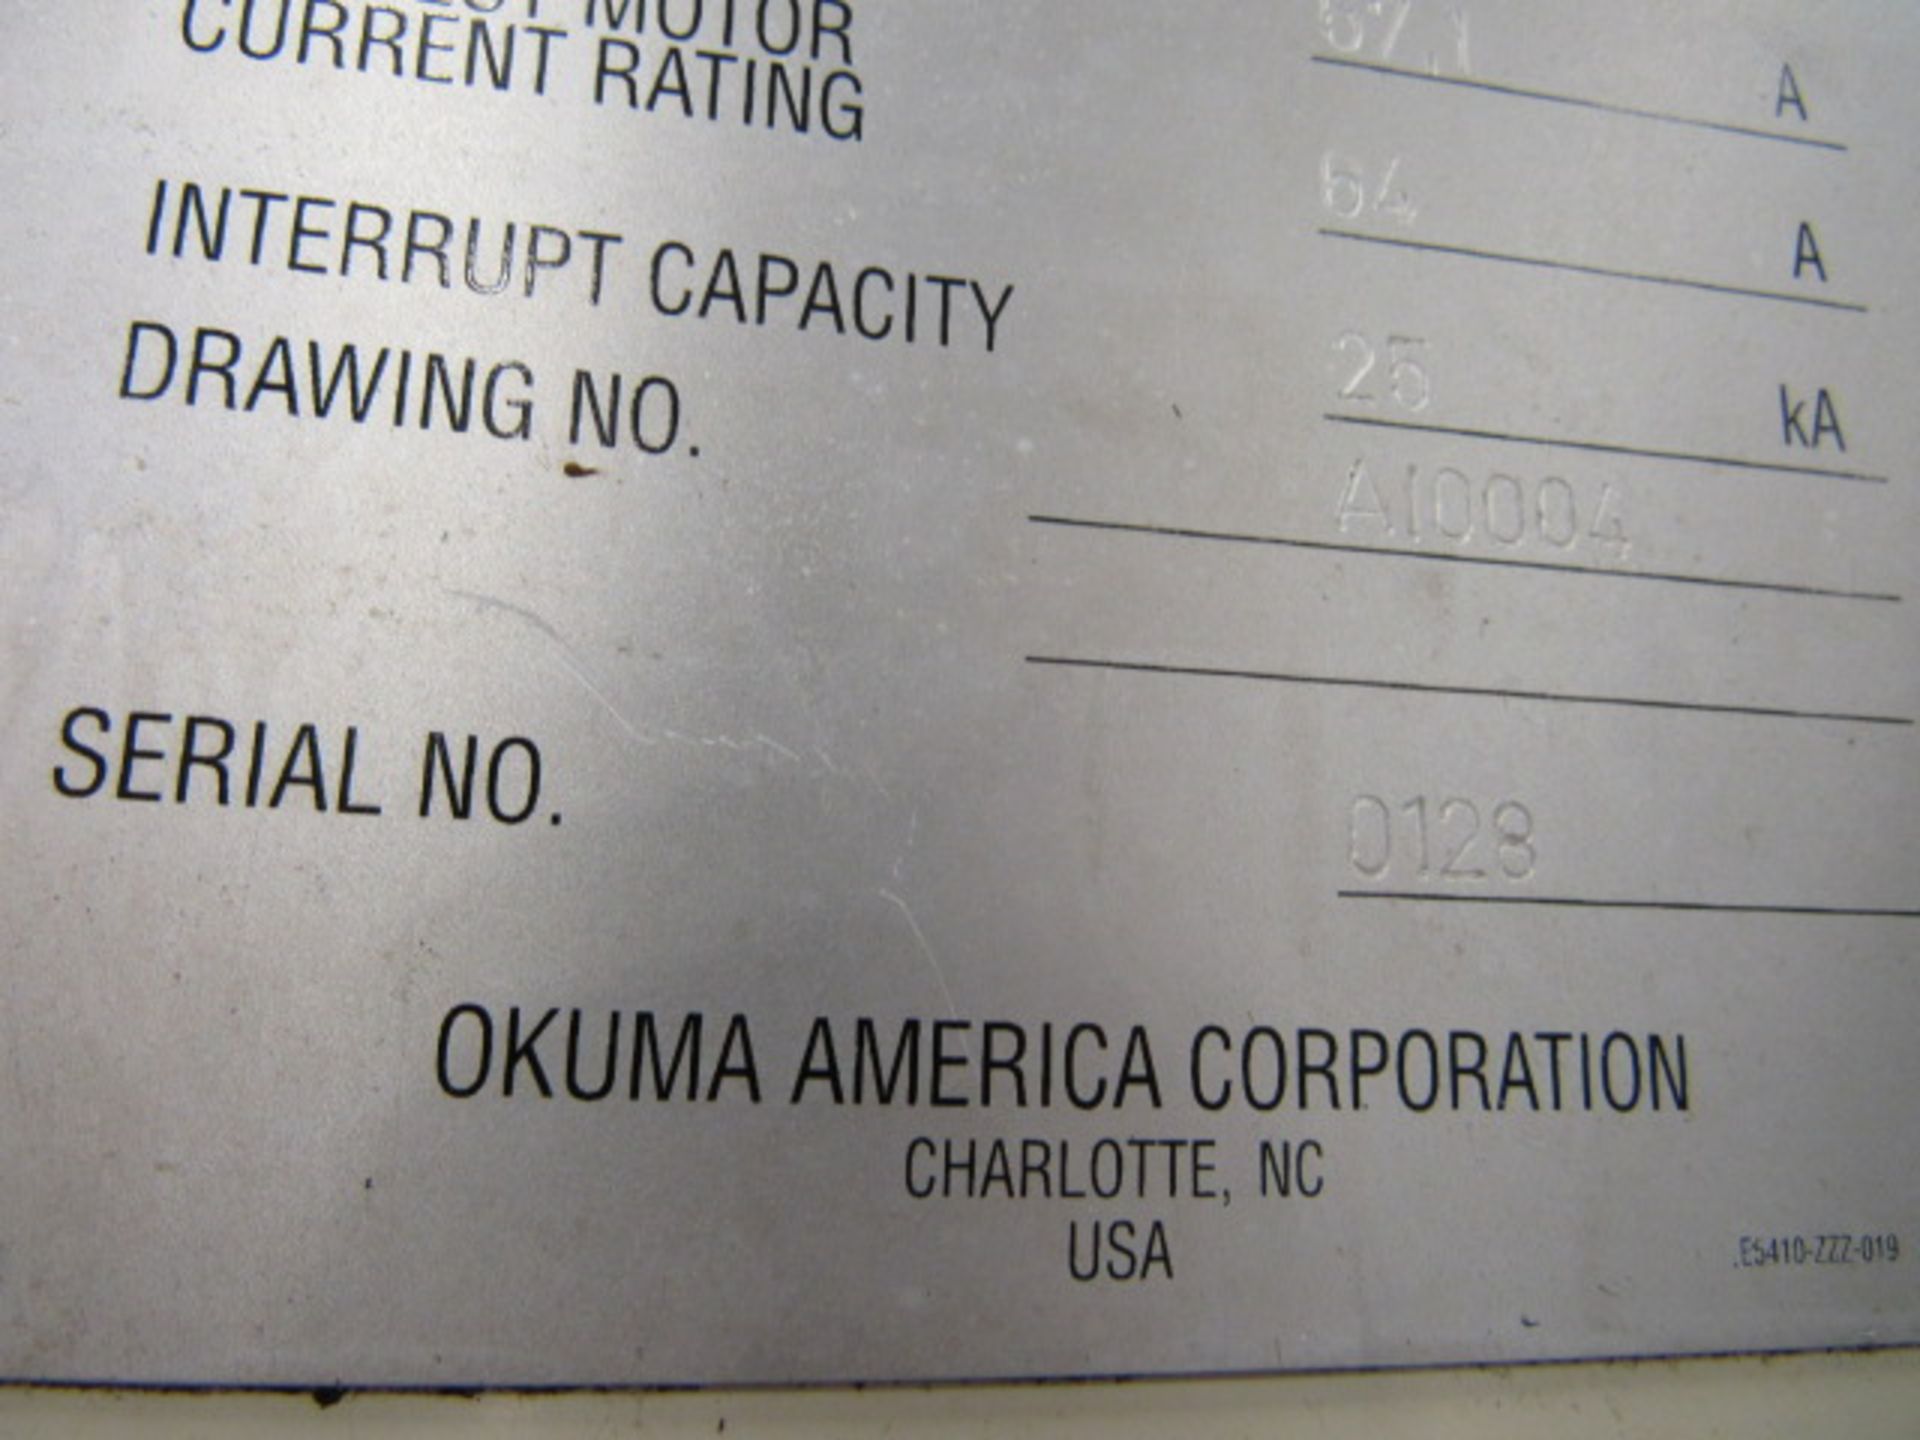 Okuma MC-V3016 CNC Vertical Machining Center - Image 5 of 5